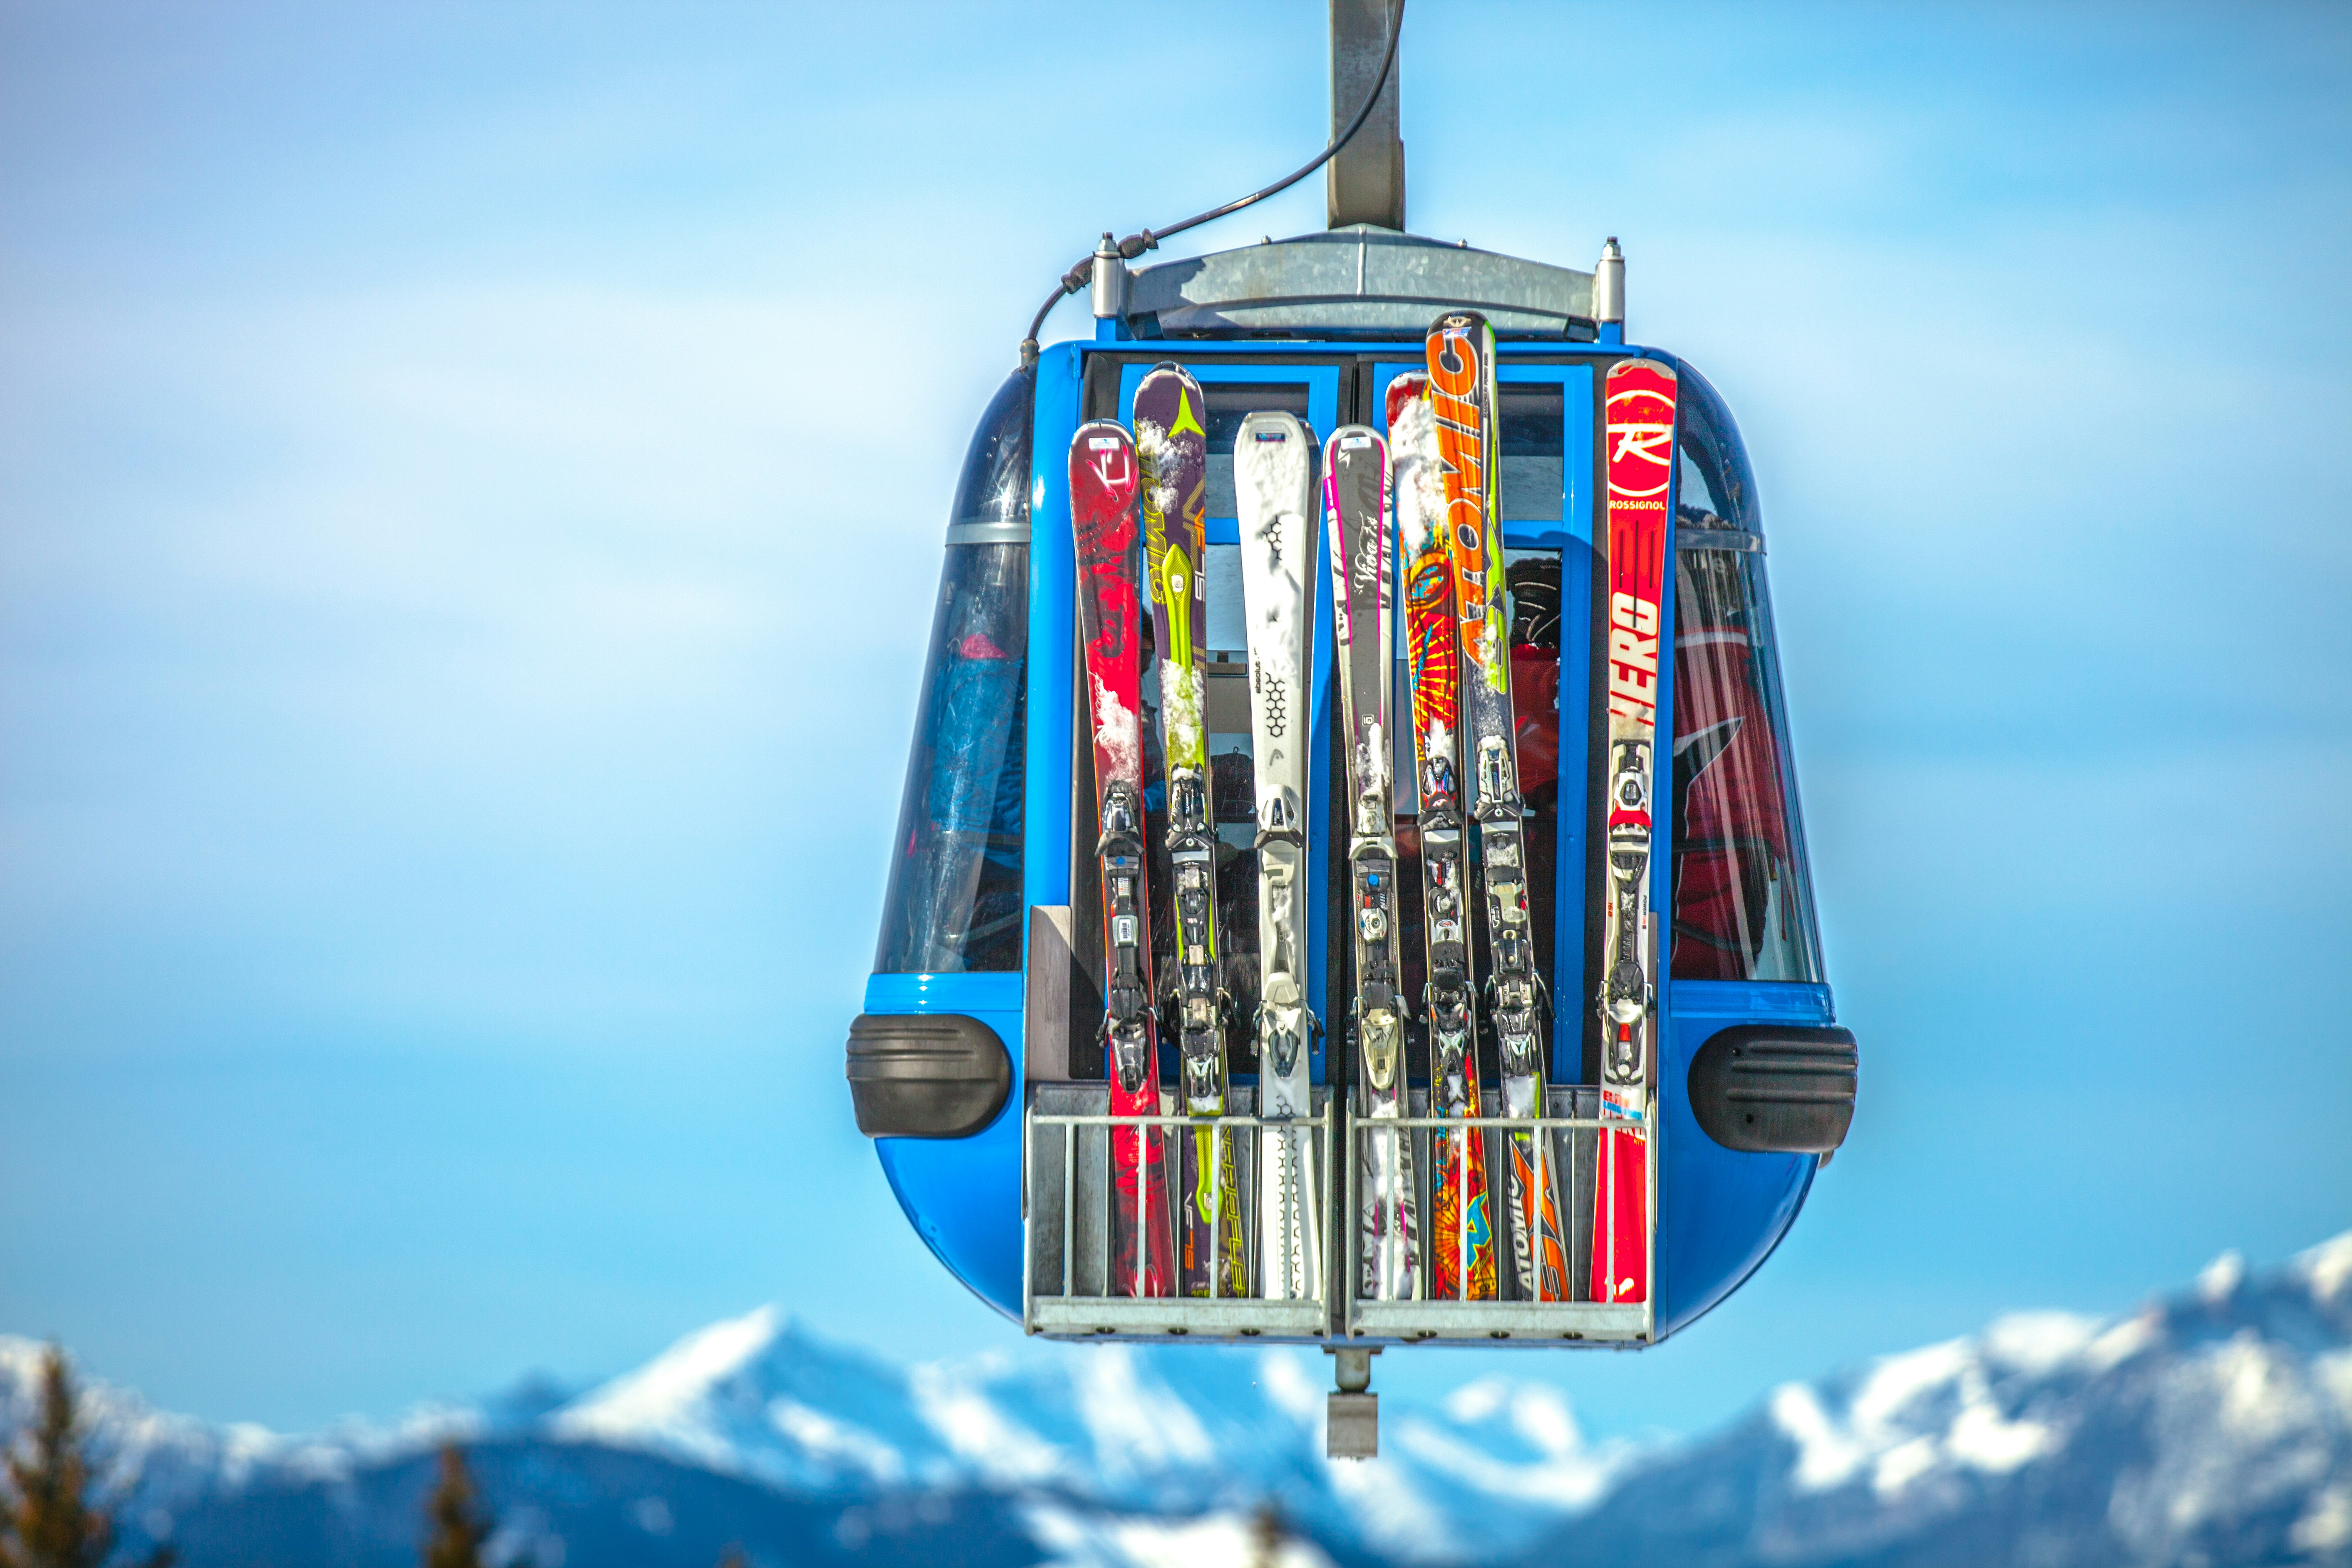 Festiwal śniegu, czyli najciekawsze wydarzenia i festiwale narciarskie we Włoskich Alpach